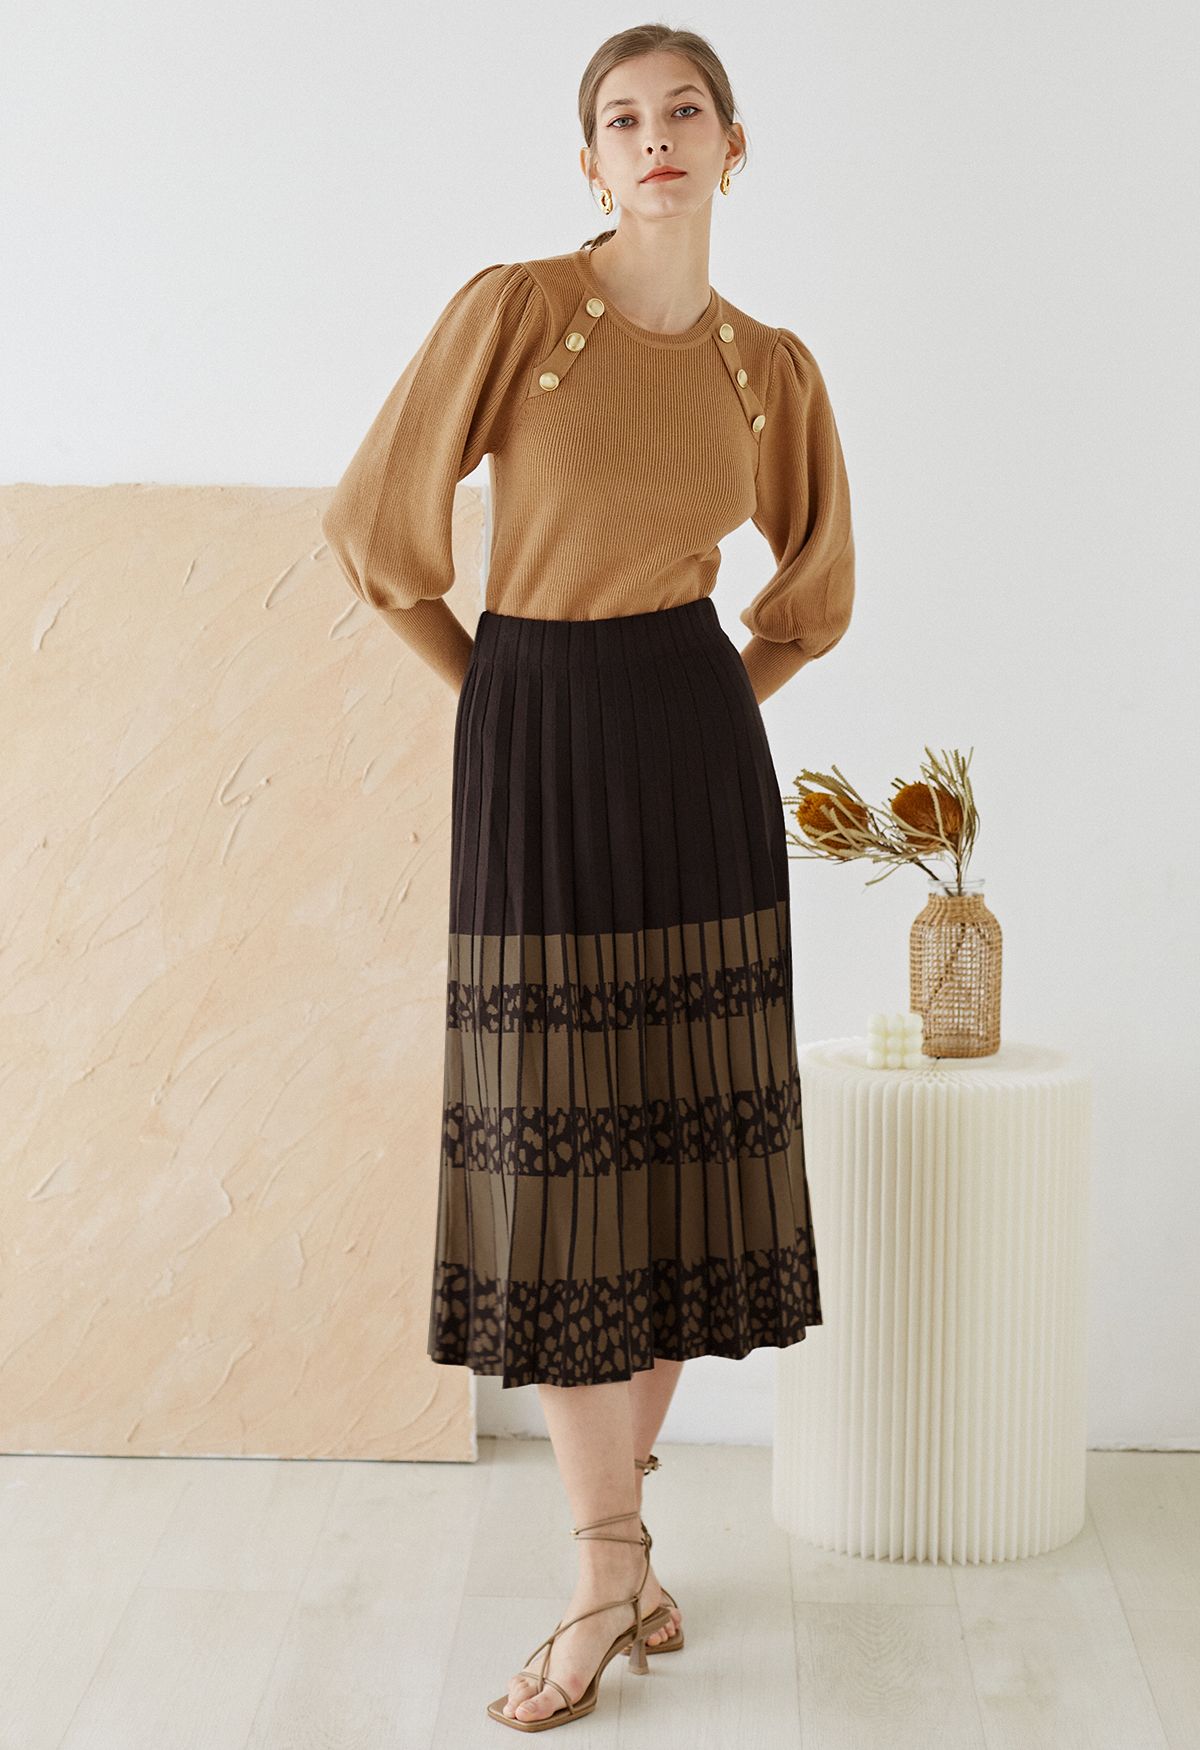 Falda de punto plisada con bloques de colores en marrón